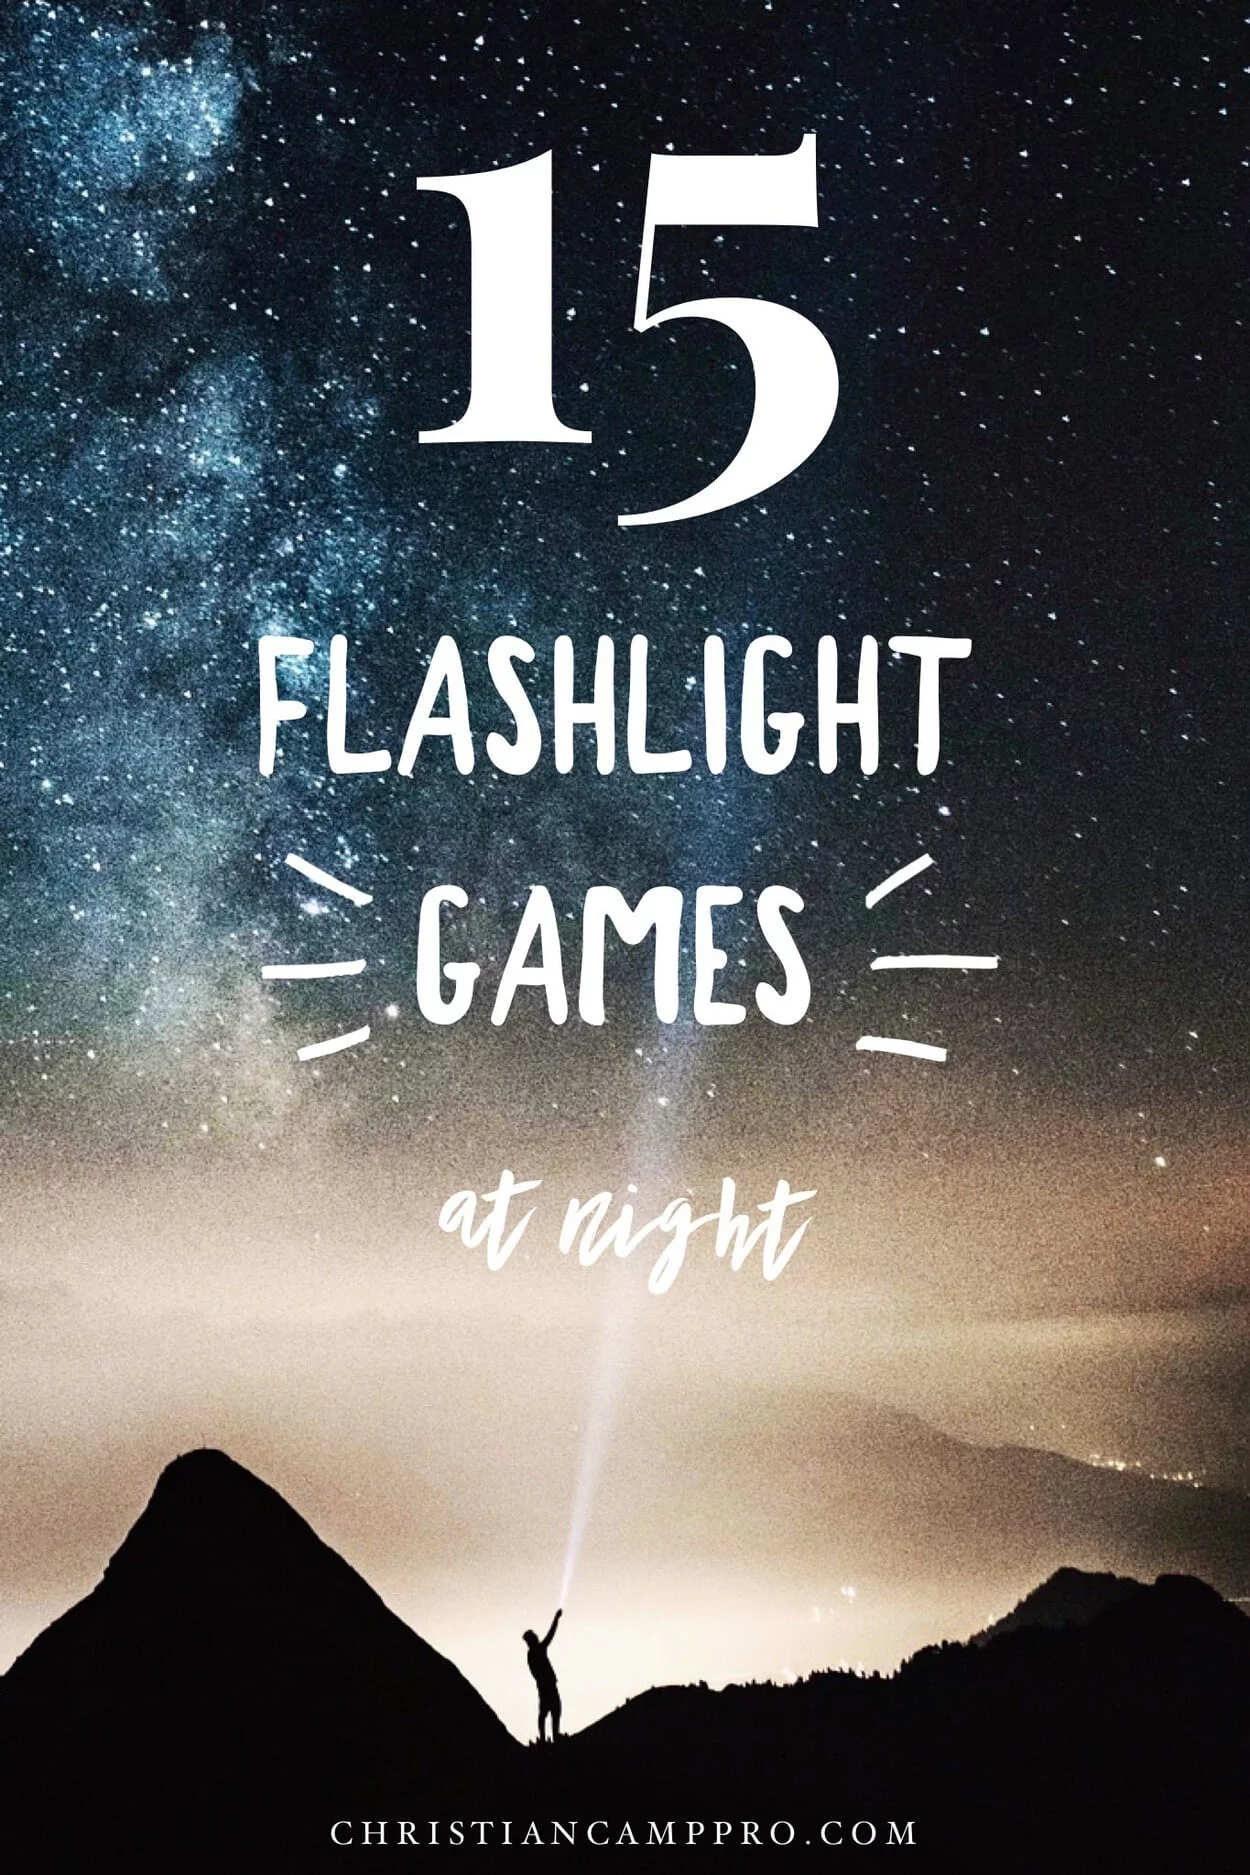 flashlight games at night